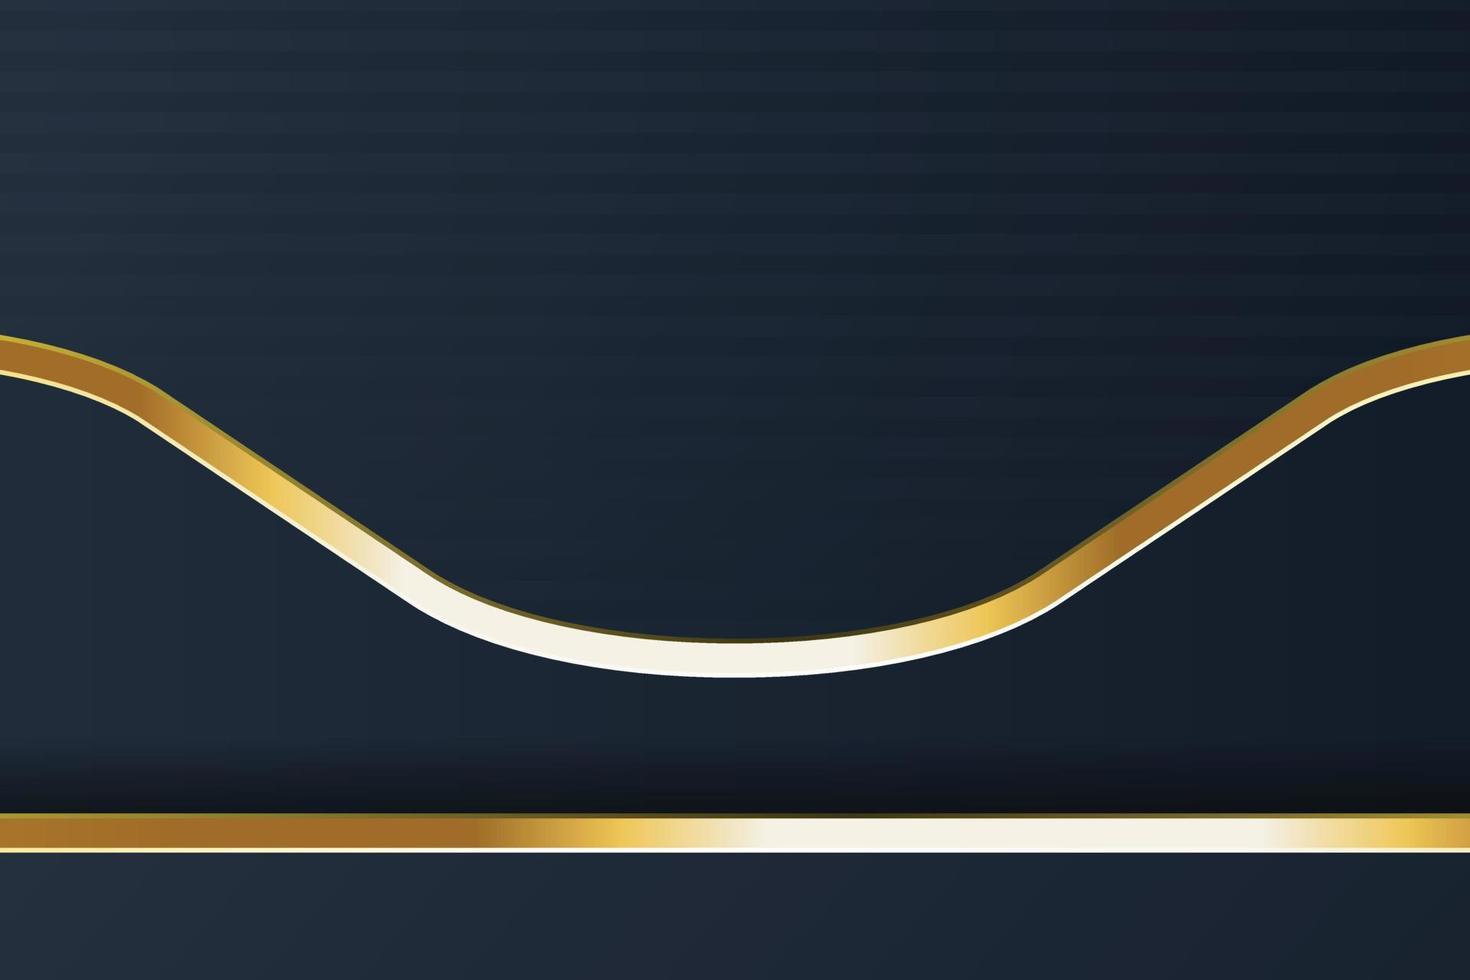 Goldbanner-Design mit minimalistischem Goldluxus im modernen Stil vektor